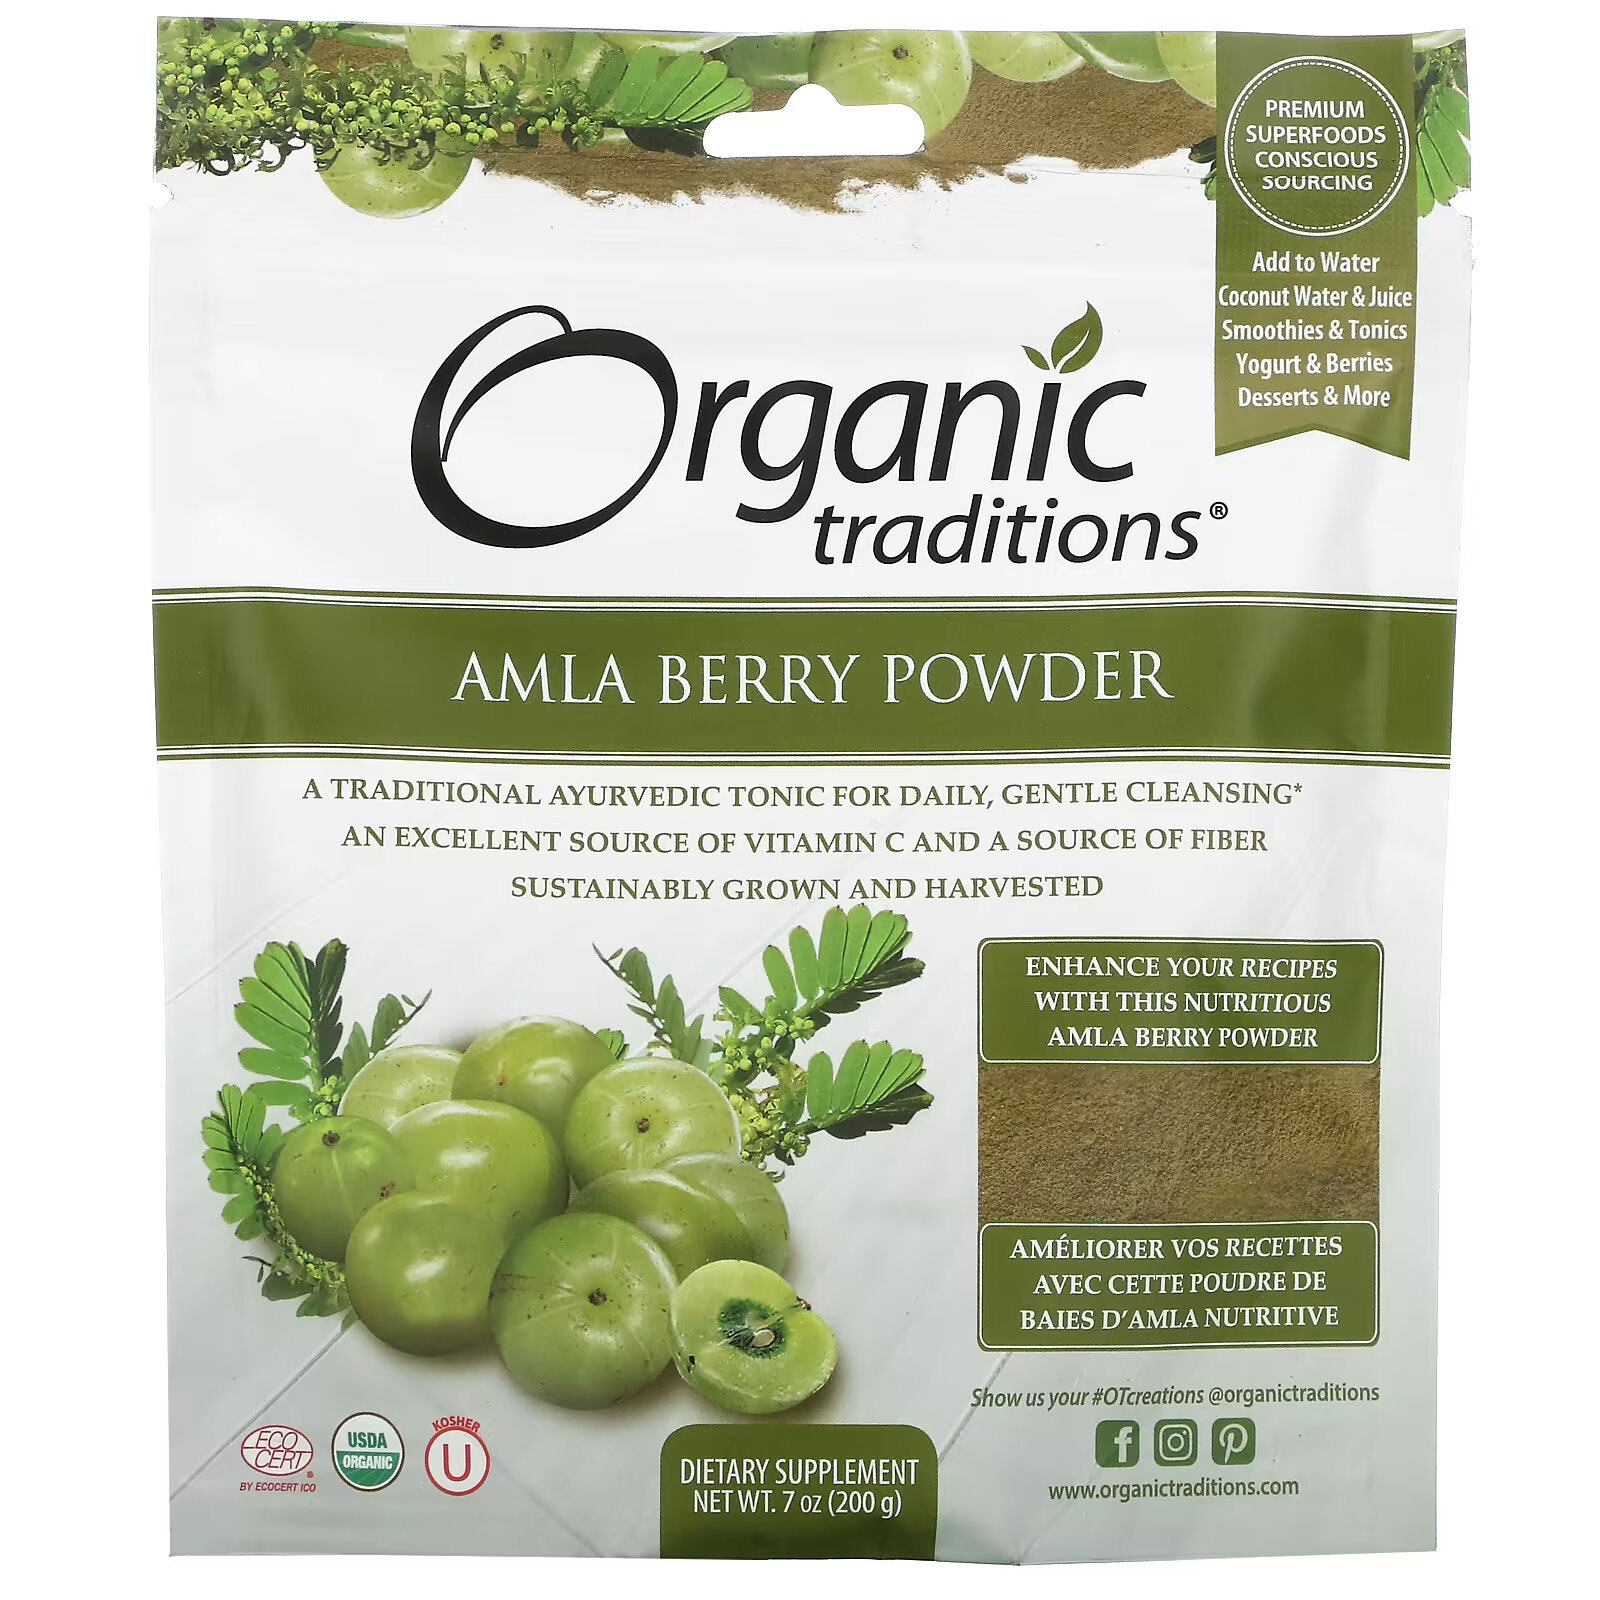 Organic Traditions, Порошок ягод амлы, 7 унций (200 г) organic traditions трифала в порошке 200 г 7 унций